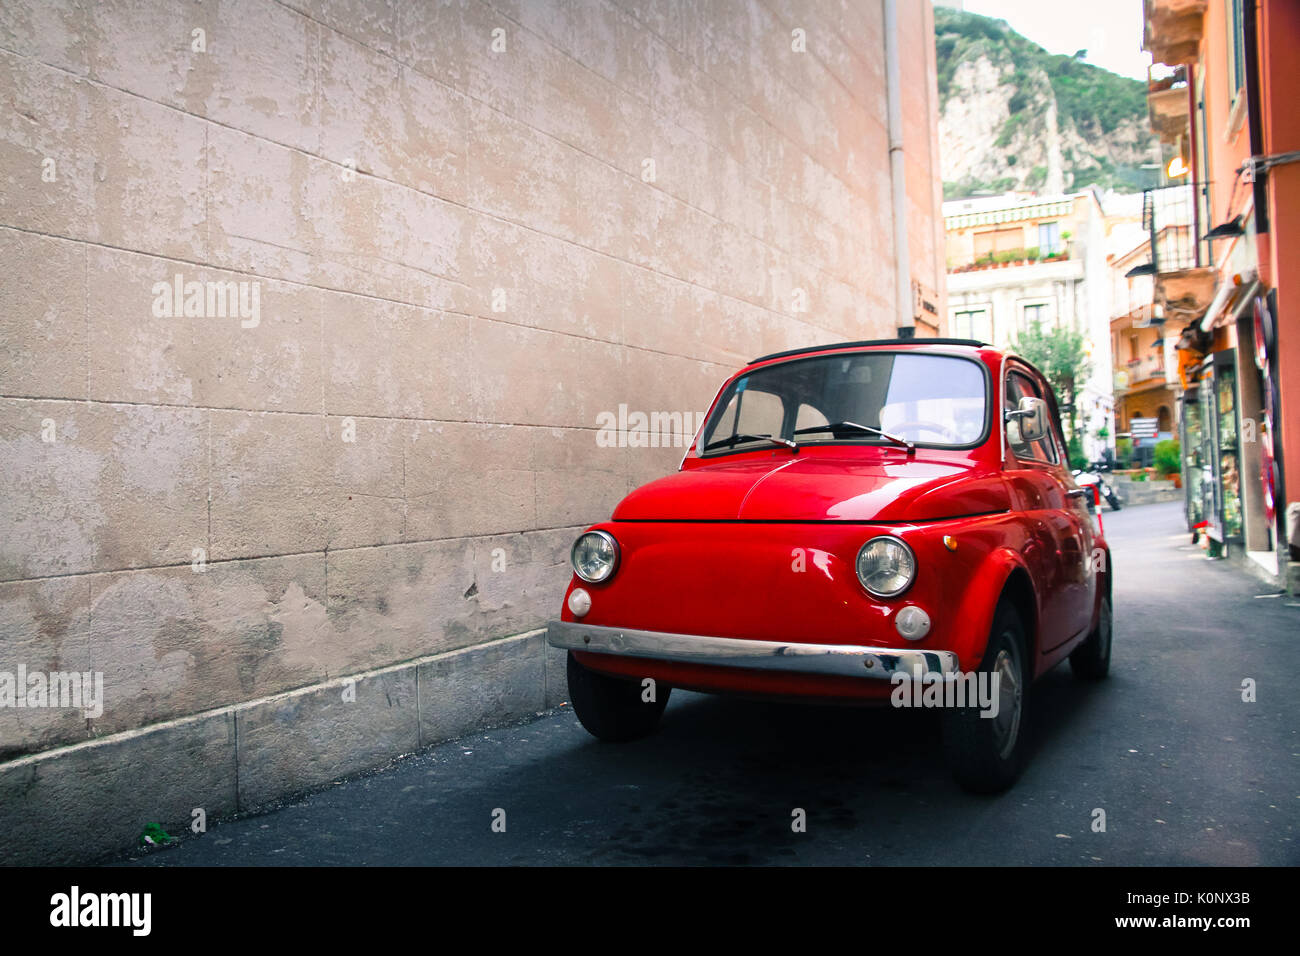 Red vecchio ben conservato vintage italiano classico auto parcheggiate in un piccolo vicolo in un italiano città siciliana con un grande vuoto muro di pietra nel lato sinistro Foto Stock